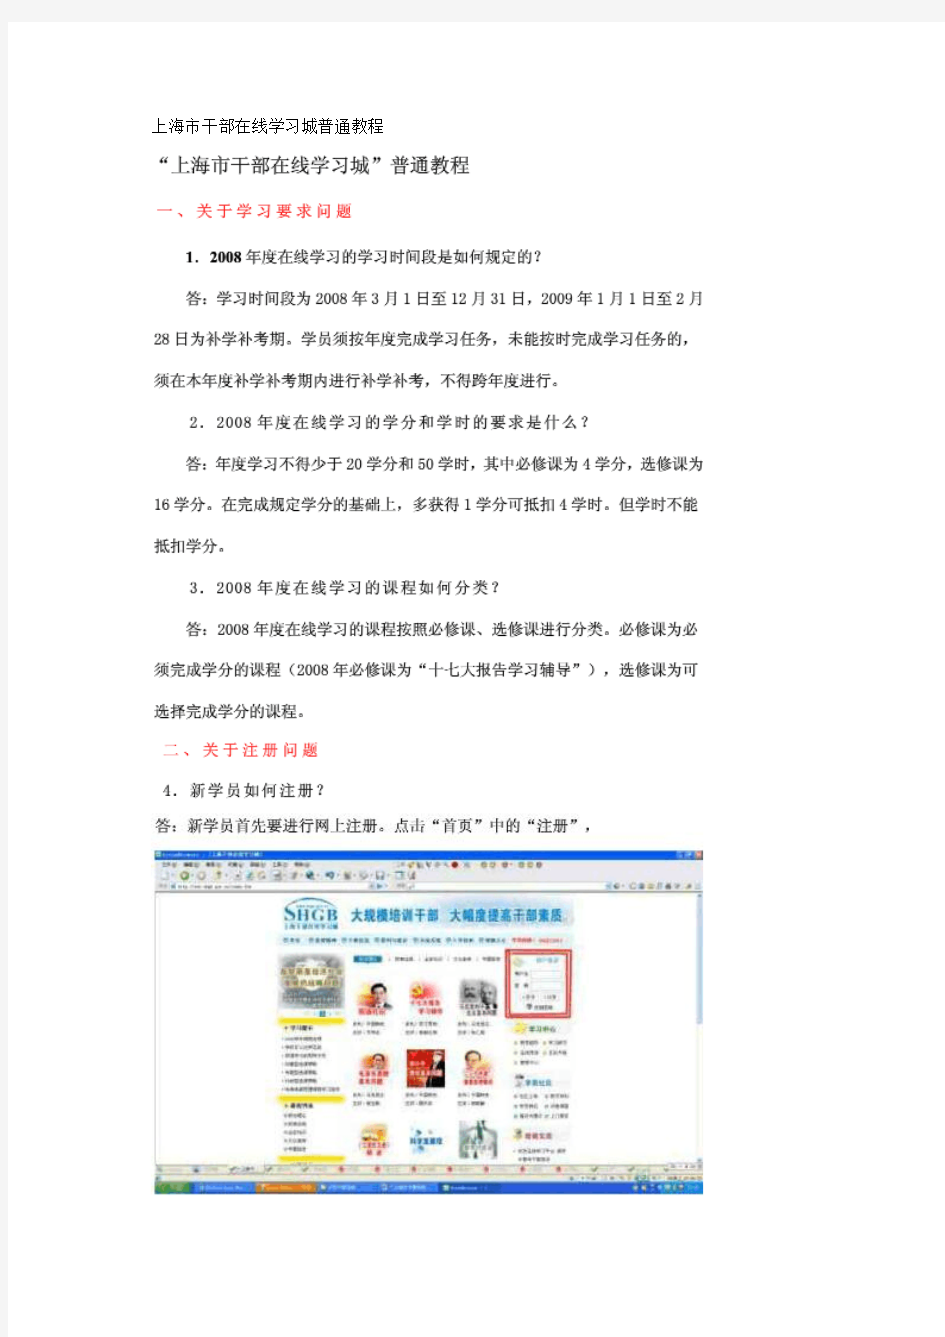 上海市干部在线学习城普通教程